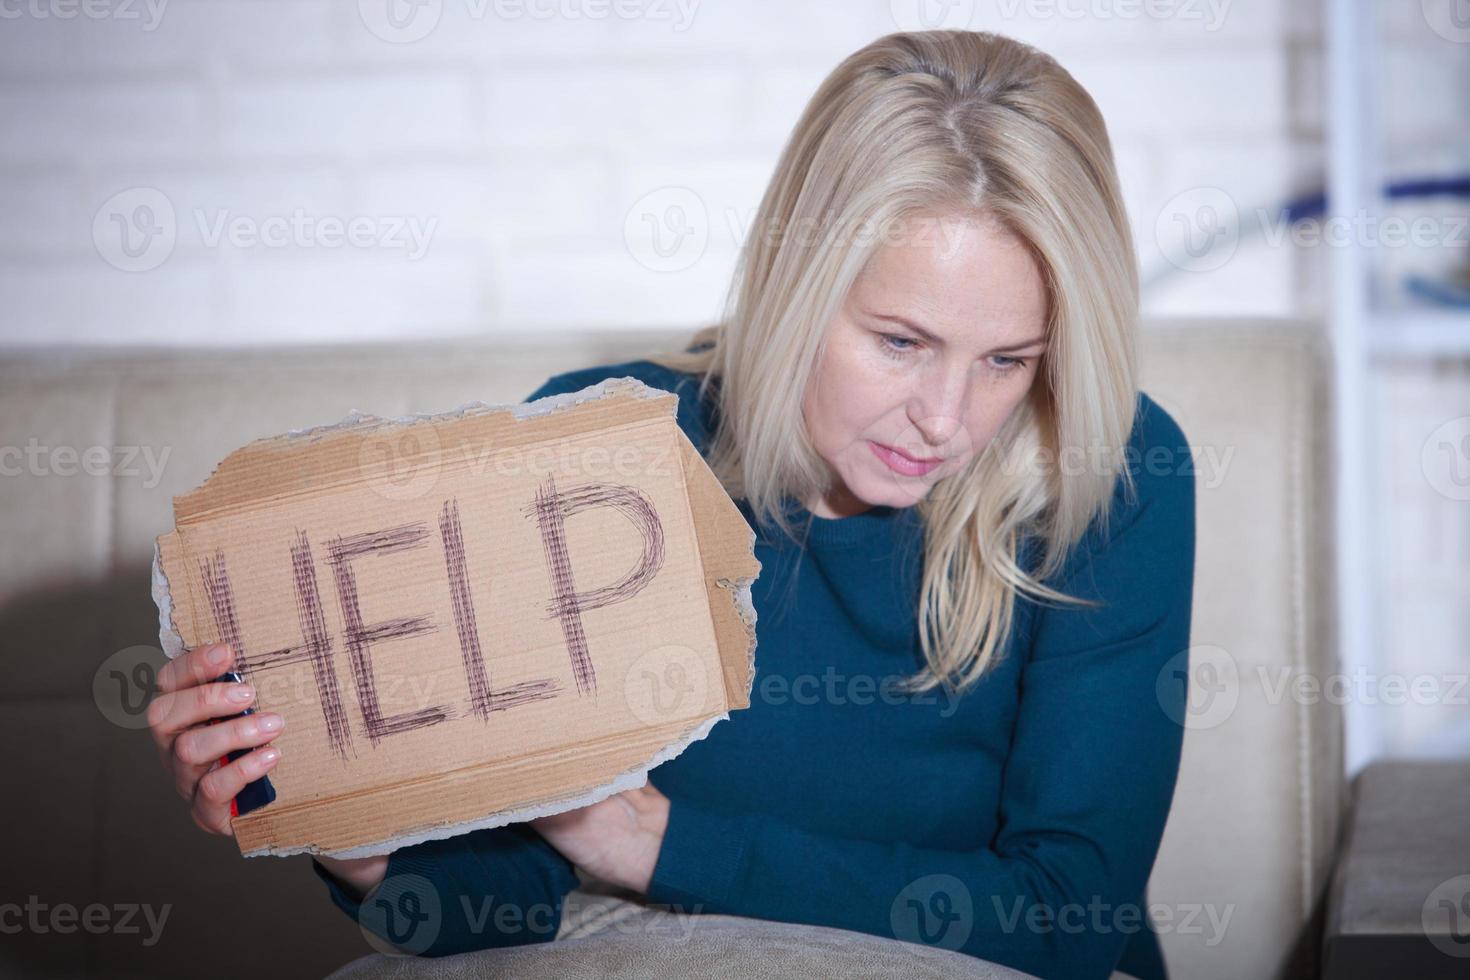 conceito de problemas sociais alcoólicos de mulher sentado pedindo ajuda. mulher de meia idade segurando uma placa m pedindo ajuda. foto